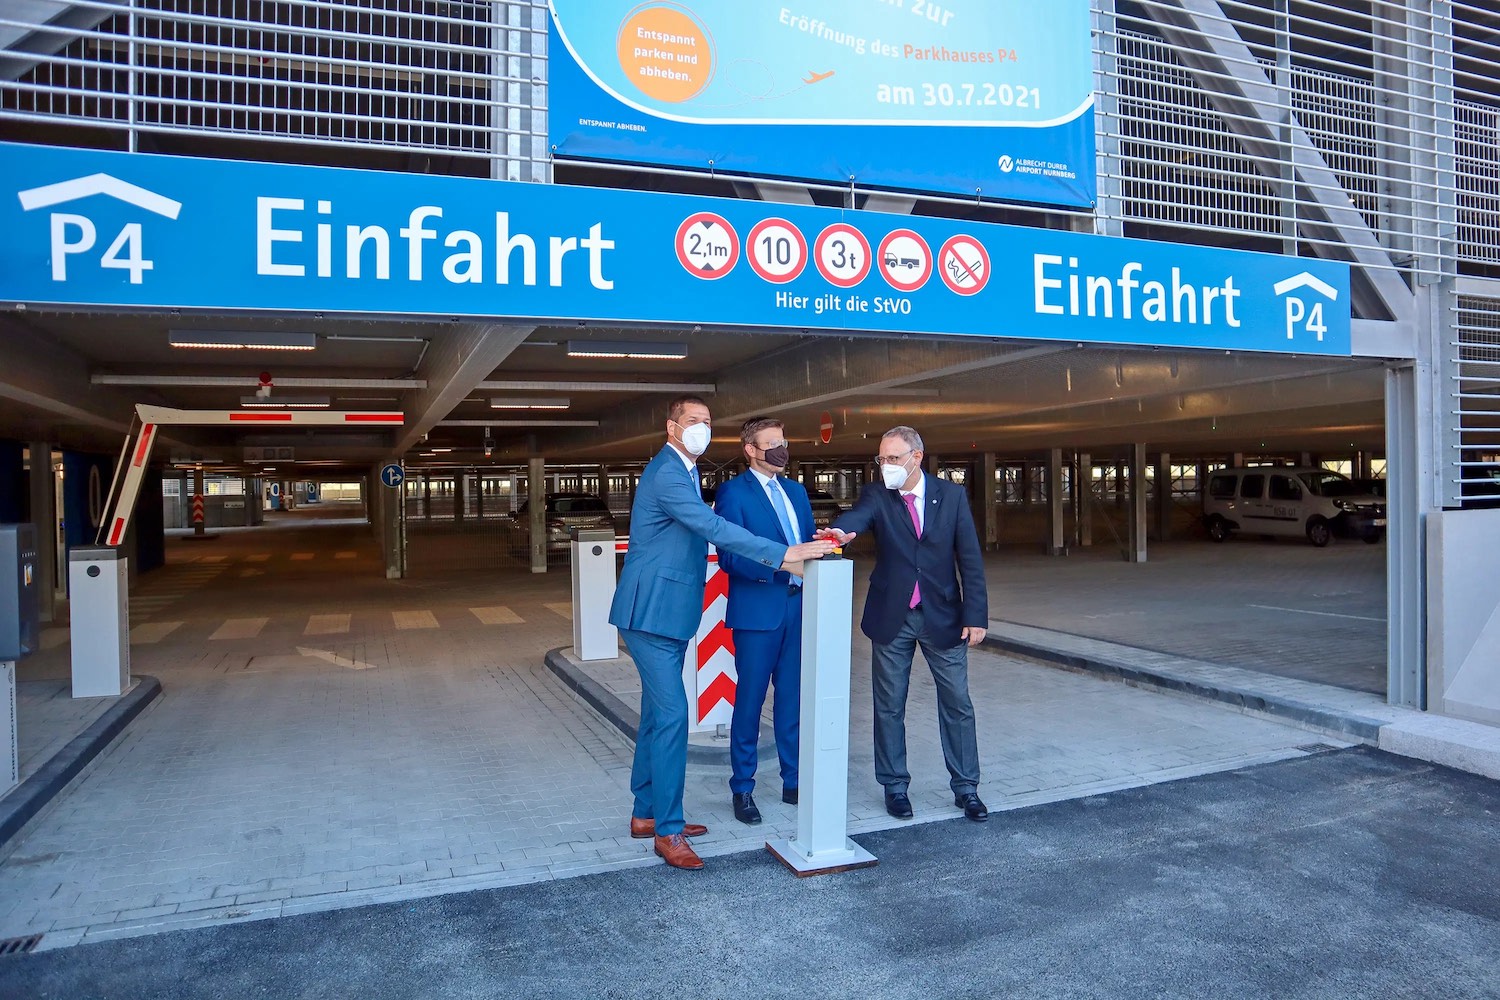 Das moderne Parkhaus P4 am Flughafen Nürnberg wurde erst am 30. Juli 2021 eröffnet – aktuell bietet der Airport hier ein Winterparken-Special. Foto: Airport Nürnberg / Jan Beinßen